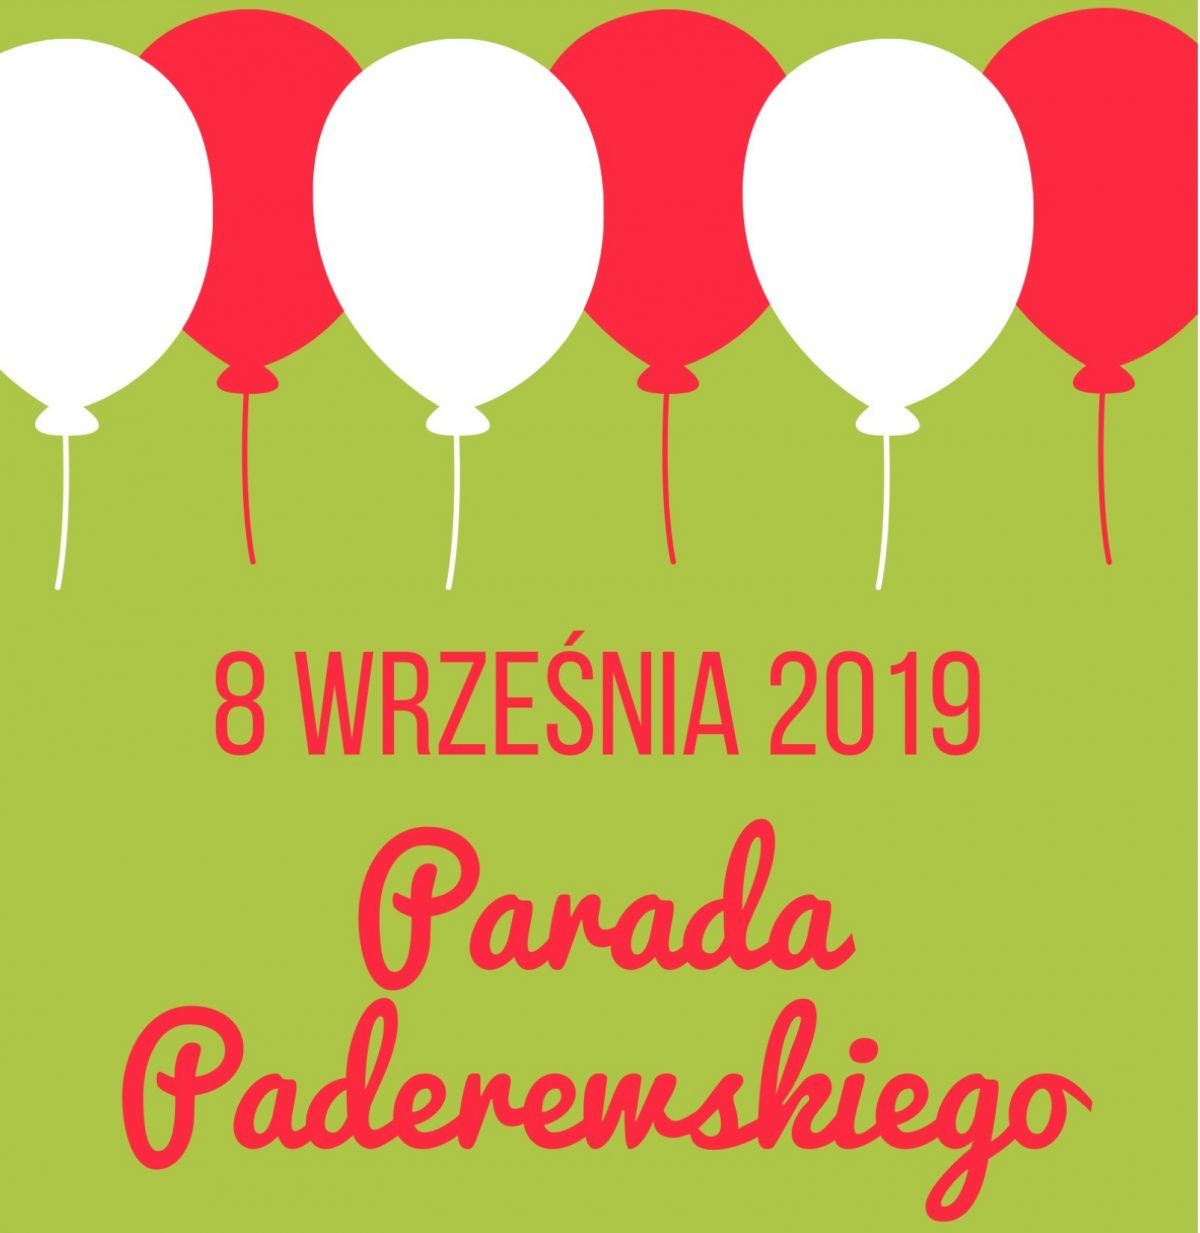 Parada Paderewskiego